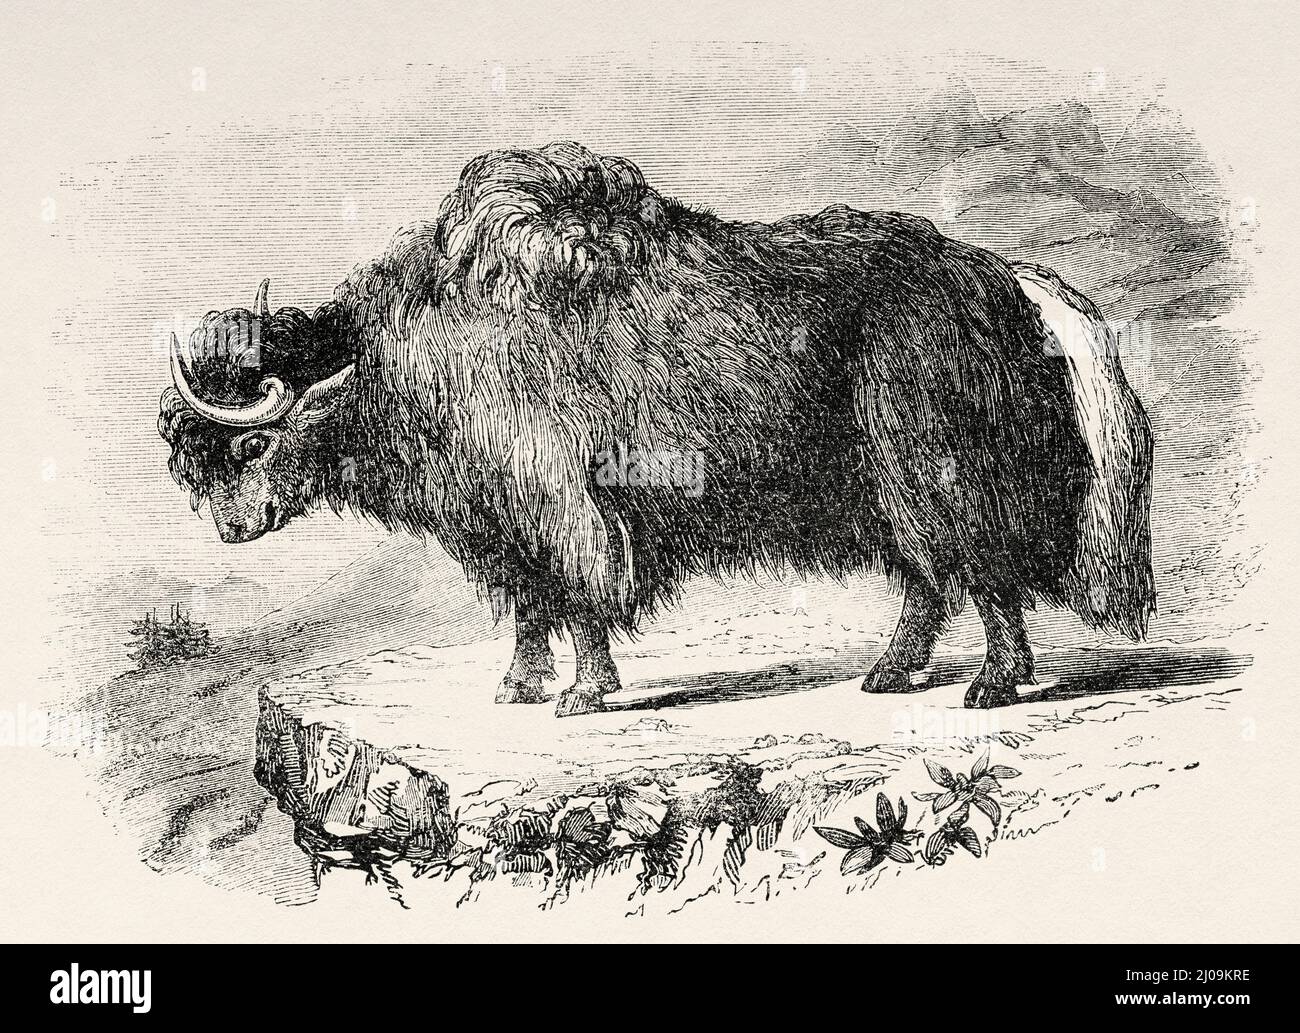 Le yak domestique (Bos grunniens) est un type de bétail domestique à poil long, la Mongolie. Asie. Voyage en Mongolie par Nikolai Mijailovich Przewalski en 1870-1873, le Tour du monde 1877 Banque D'Images